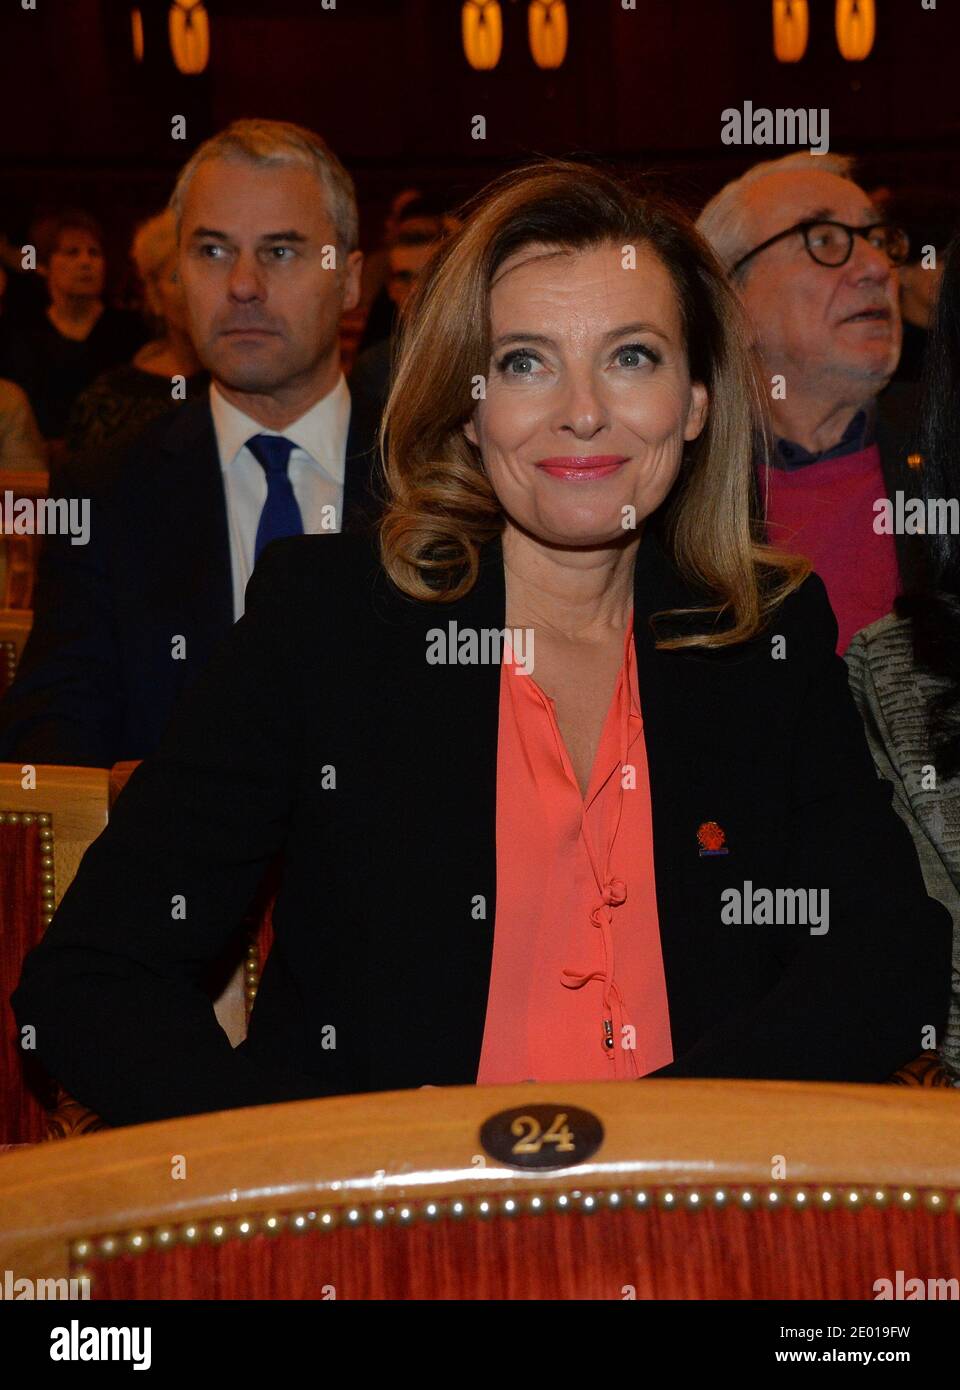 Valerie Trierweiler ha rappresentato il 22 novembre 2013, a Parigi, durante la cerimonia del 'Prix Danielle Mitterrand 2013'. Foto di Christian Liegi/ABACAPRESS.COM Foto Stock